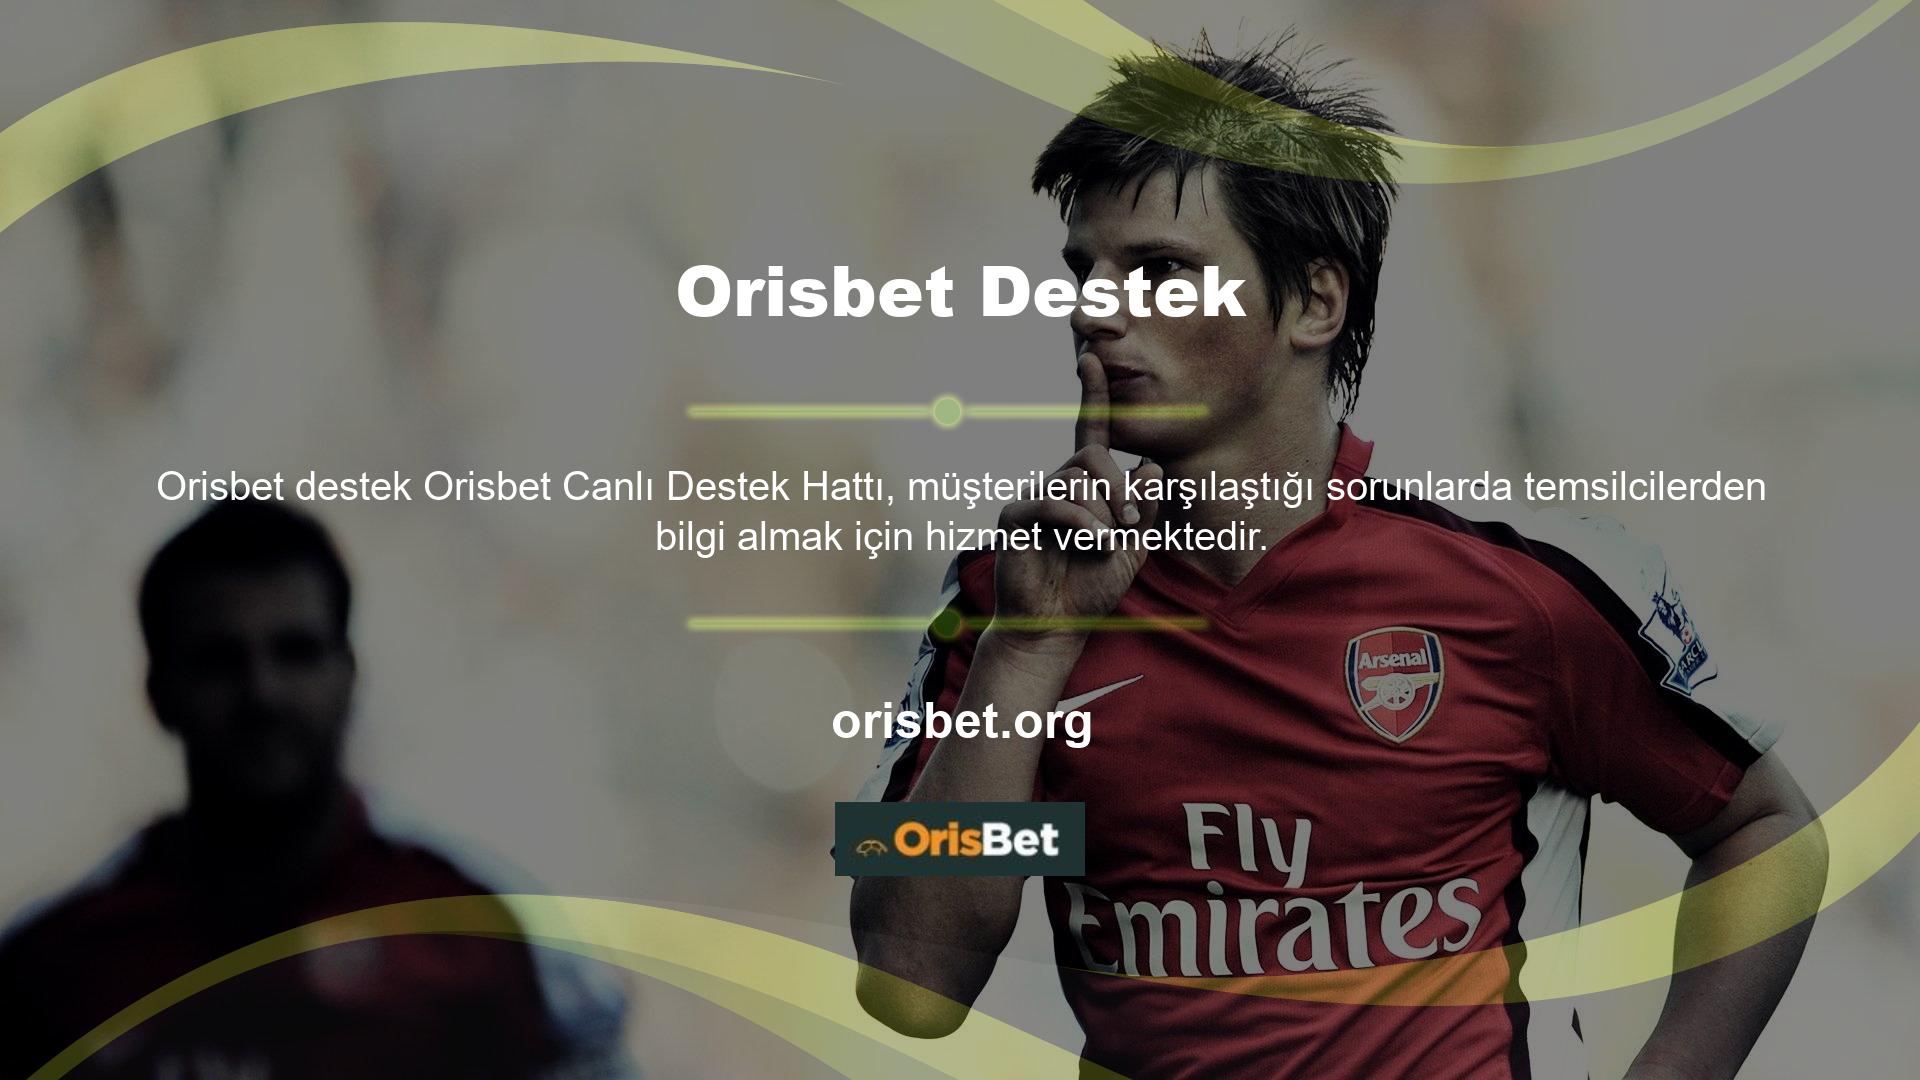 Orisbet bahis platformu üyeleri farklı oyun içerikleri ve farklı kampanyalar sunmaktadır